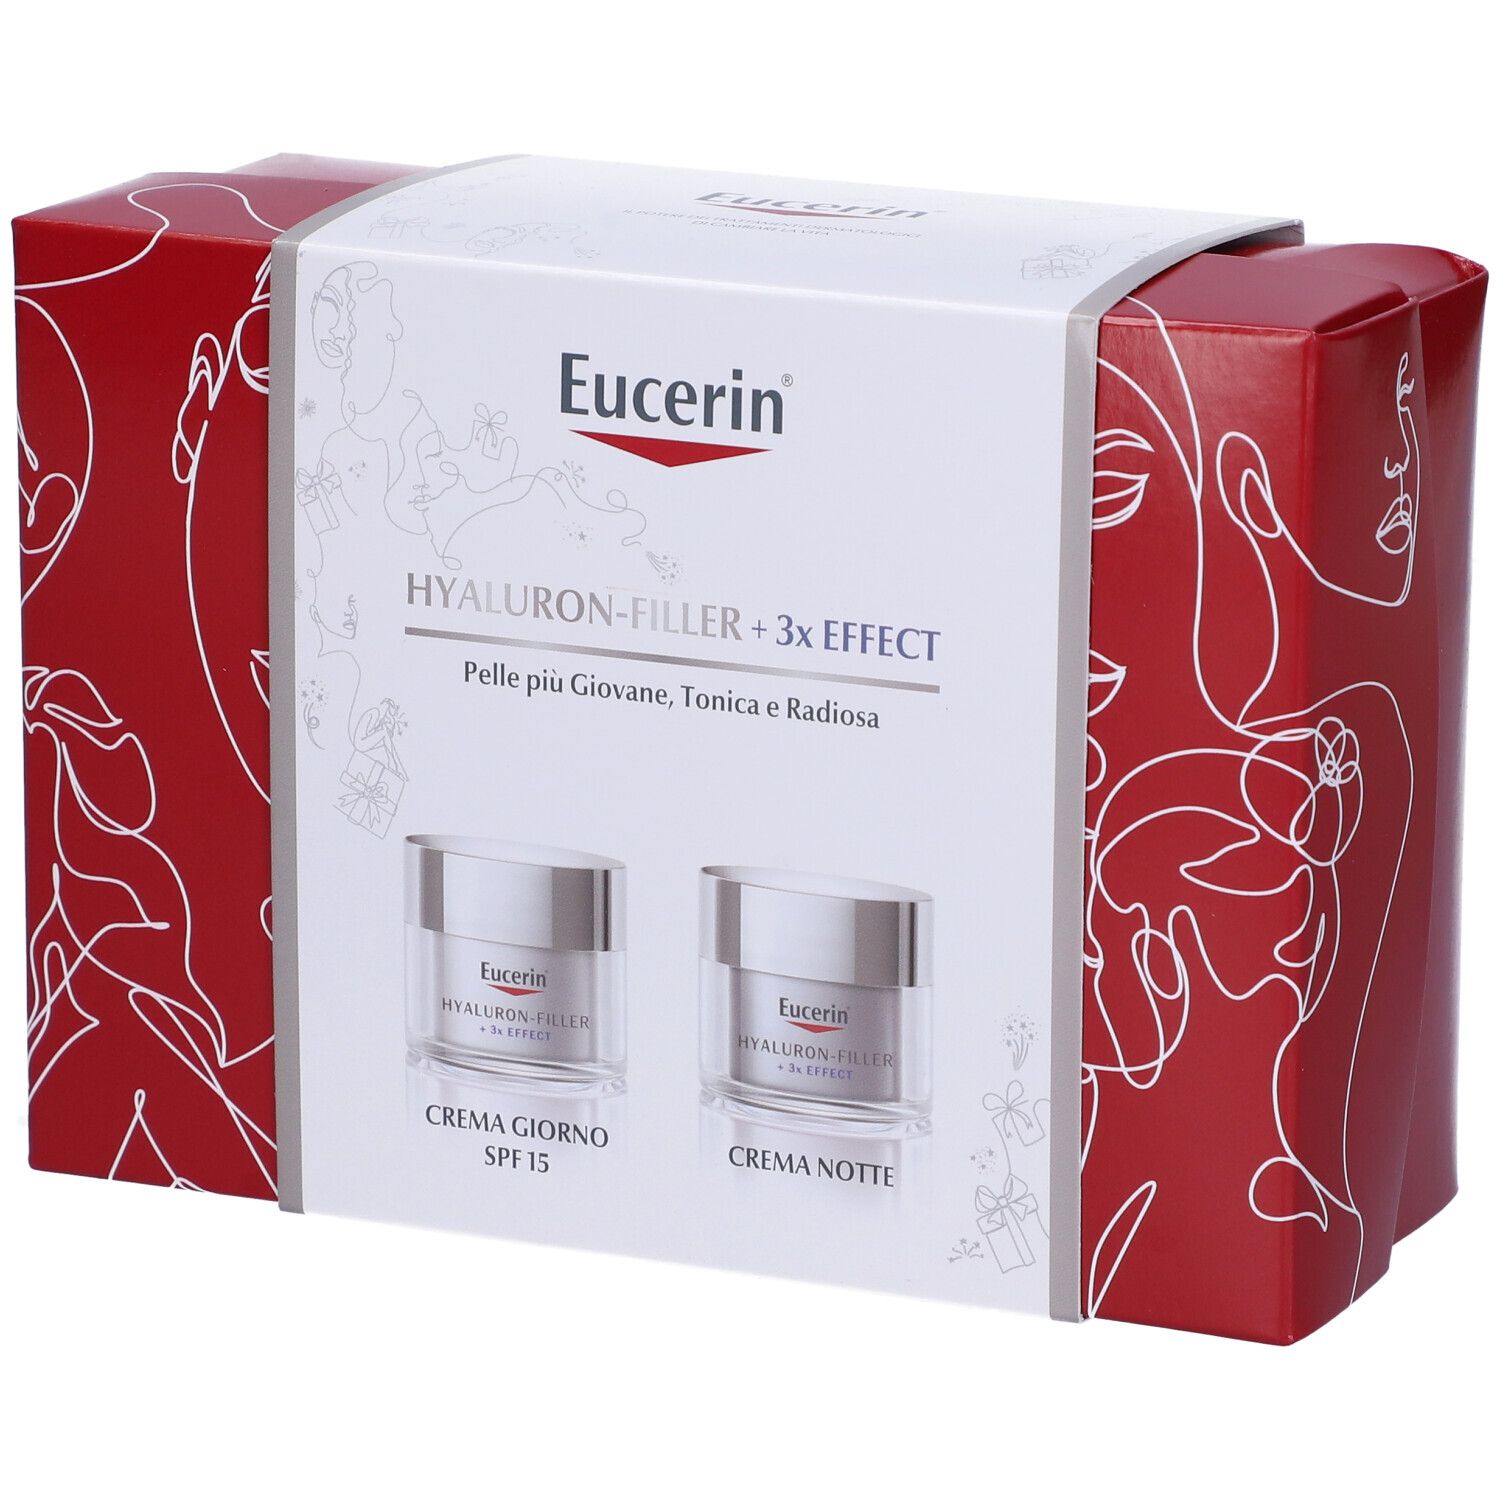 Eucerin Box Hyaluron Filler Crema Giorno + Crema Notte